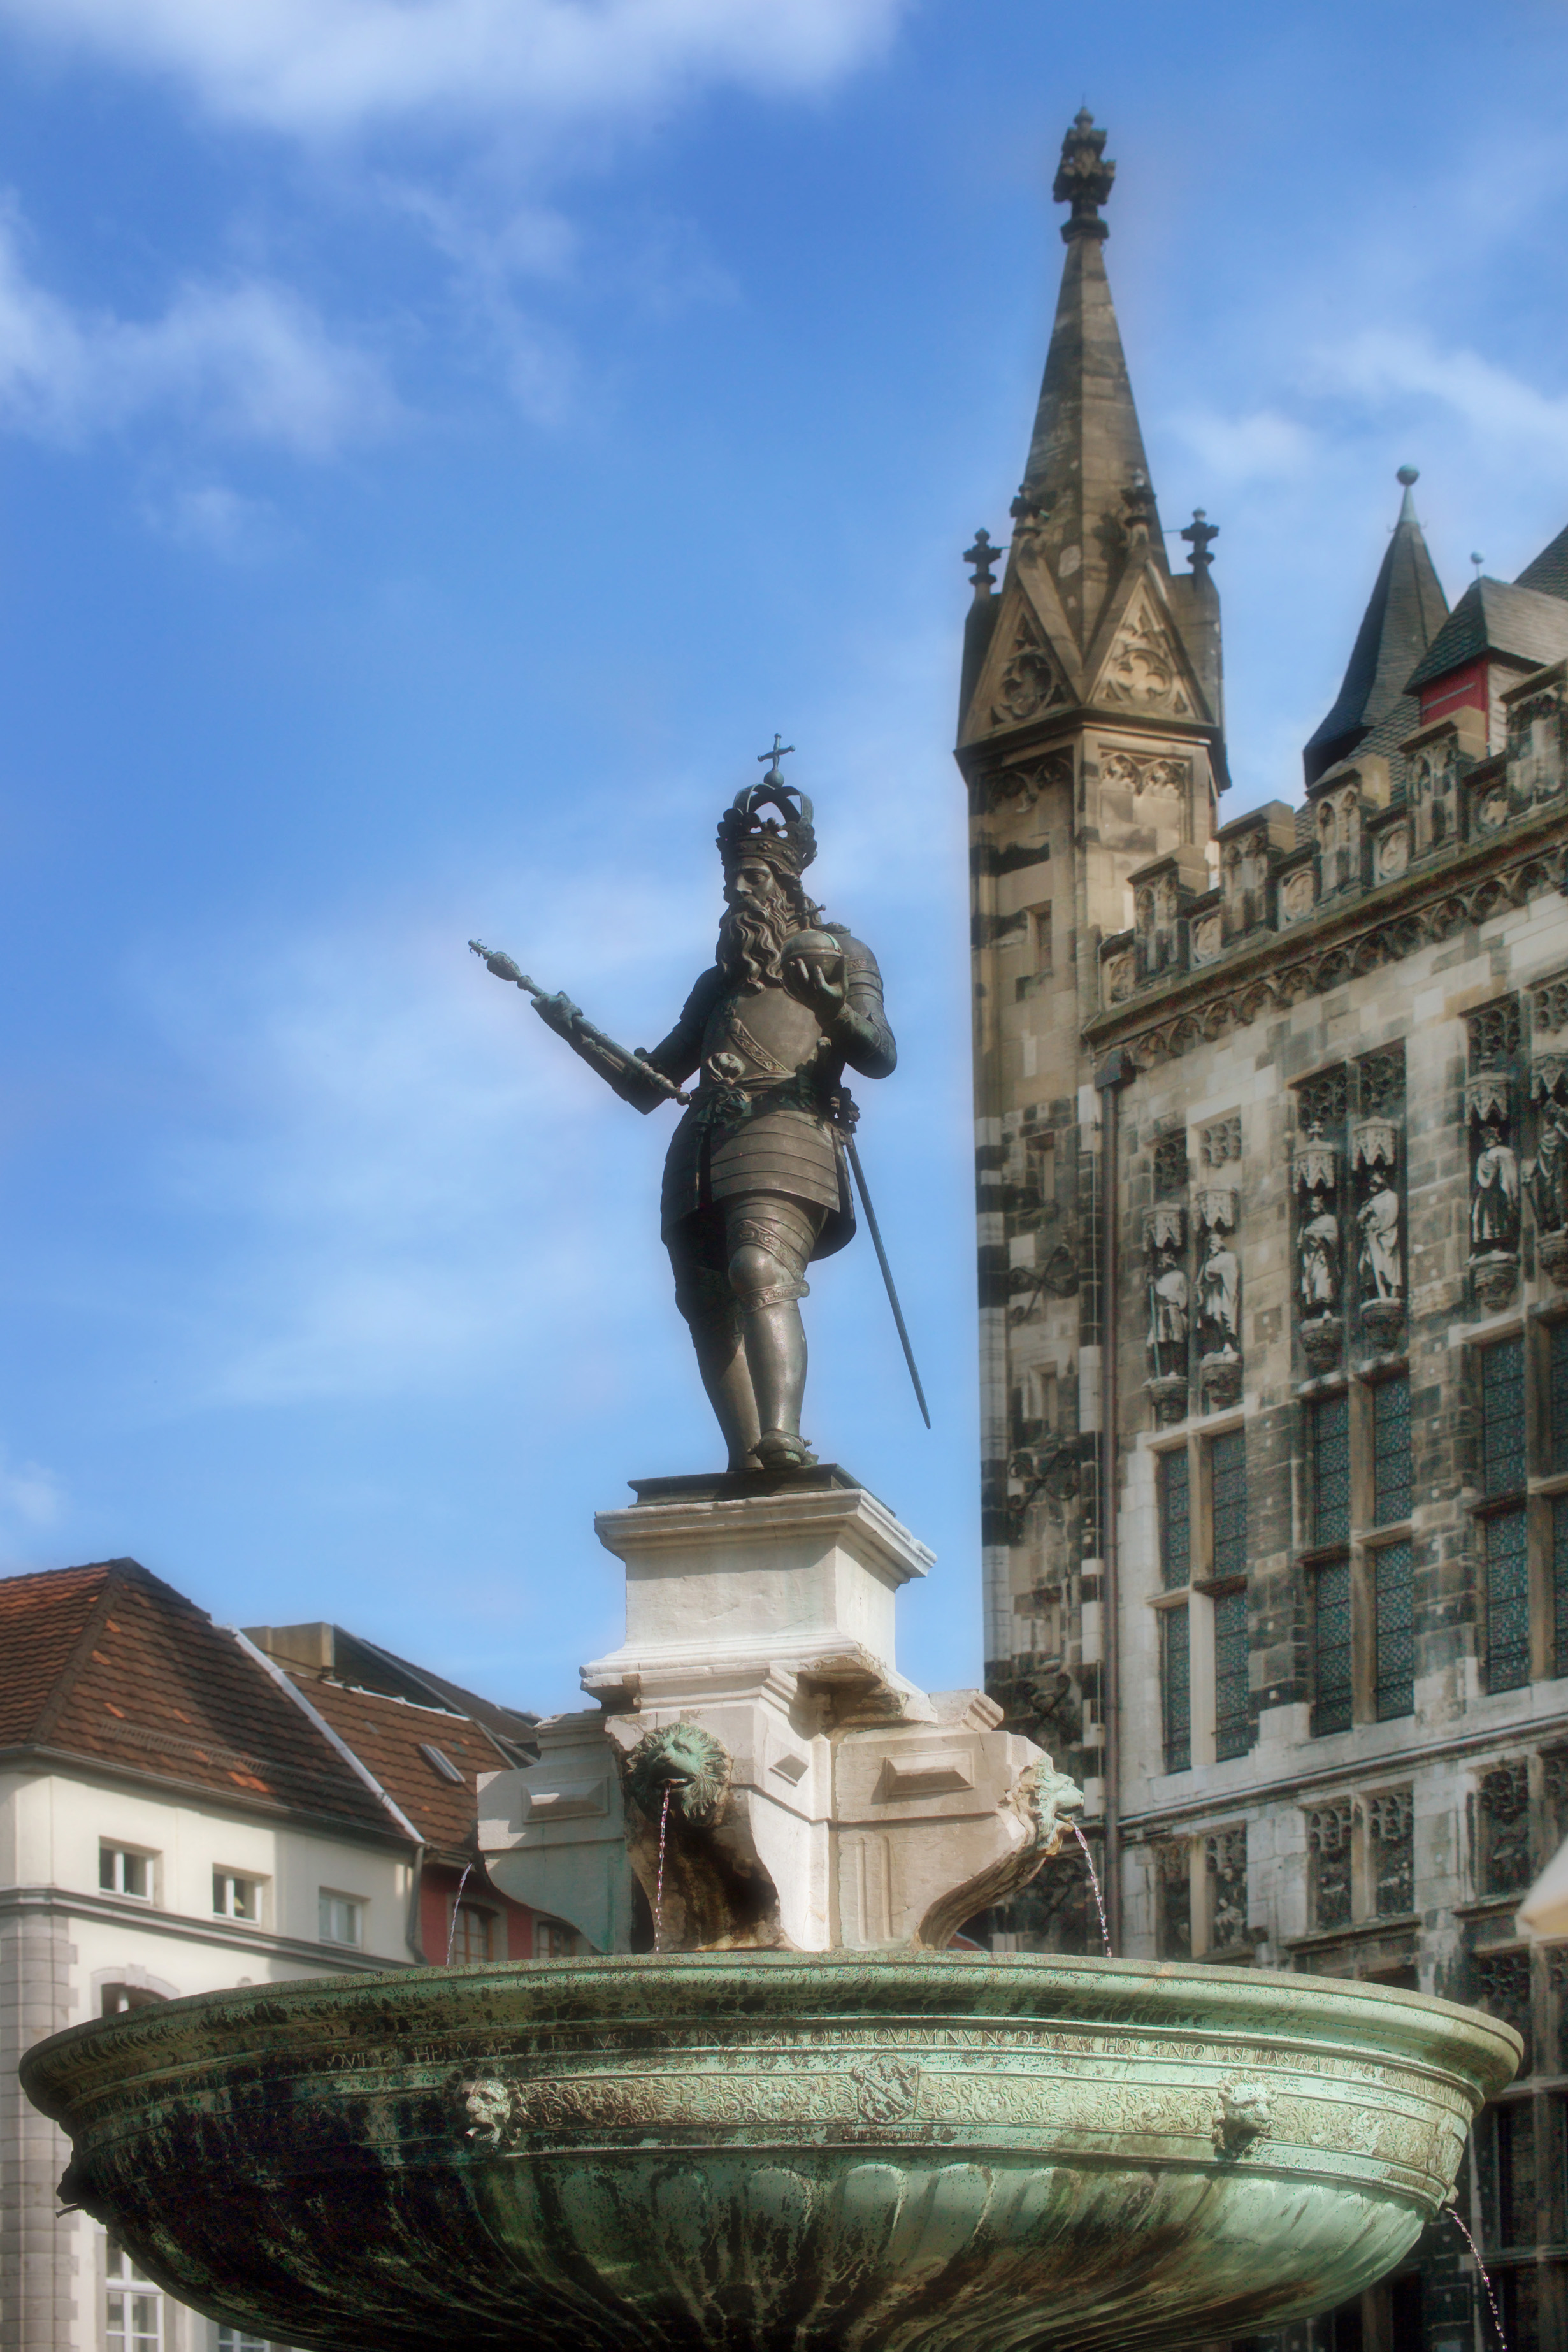 Der Karlsbrunnen (auch Marktbrunnen), der älteste Brunnen Aachens, steht direkt vor dem Aachener Rathaus. Seit 1620 krönte ihn die Figur Karls des Großen.